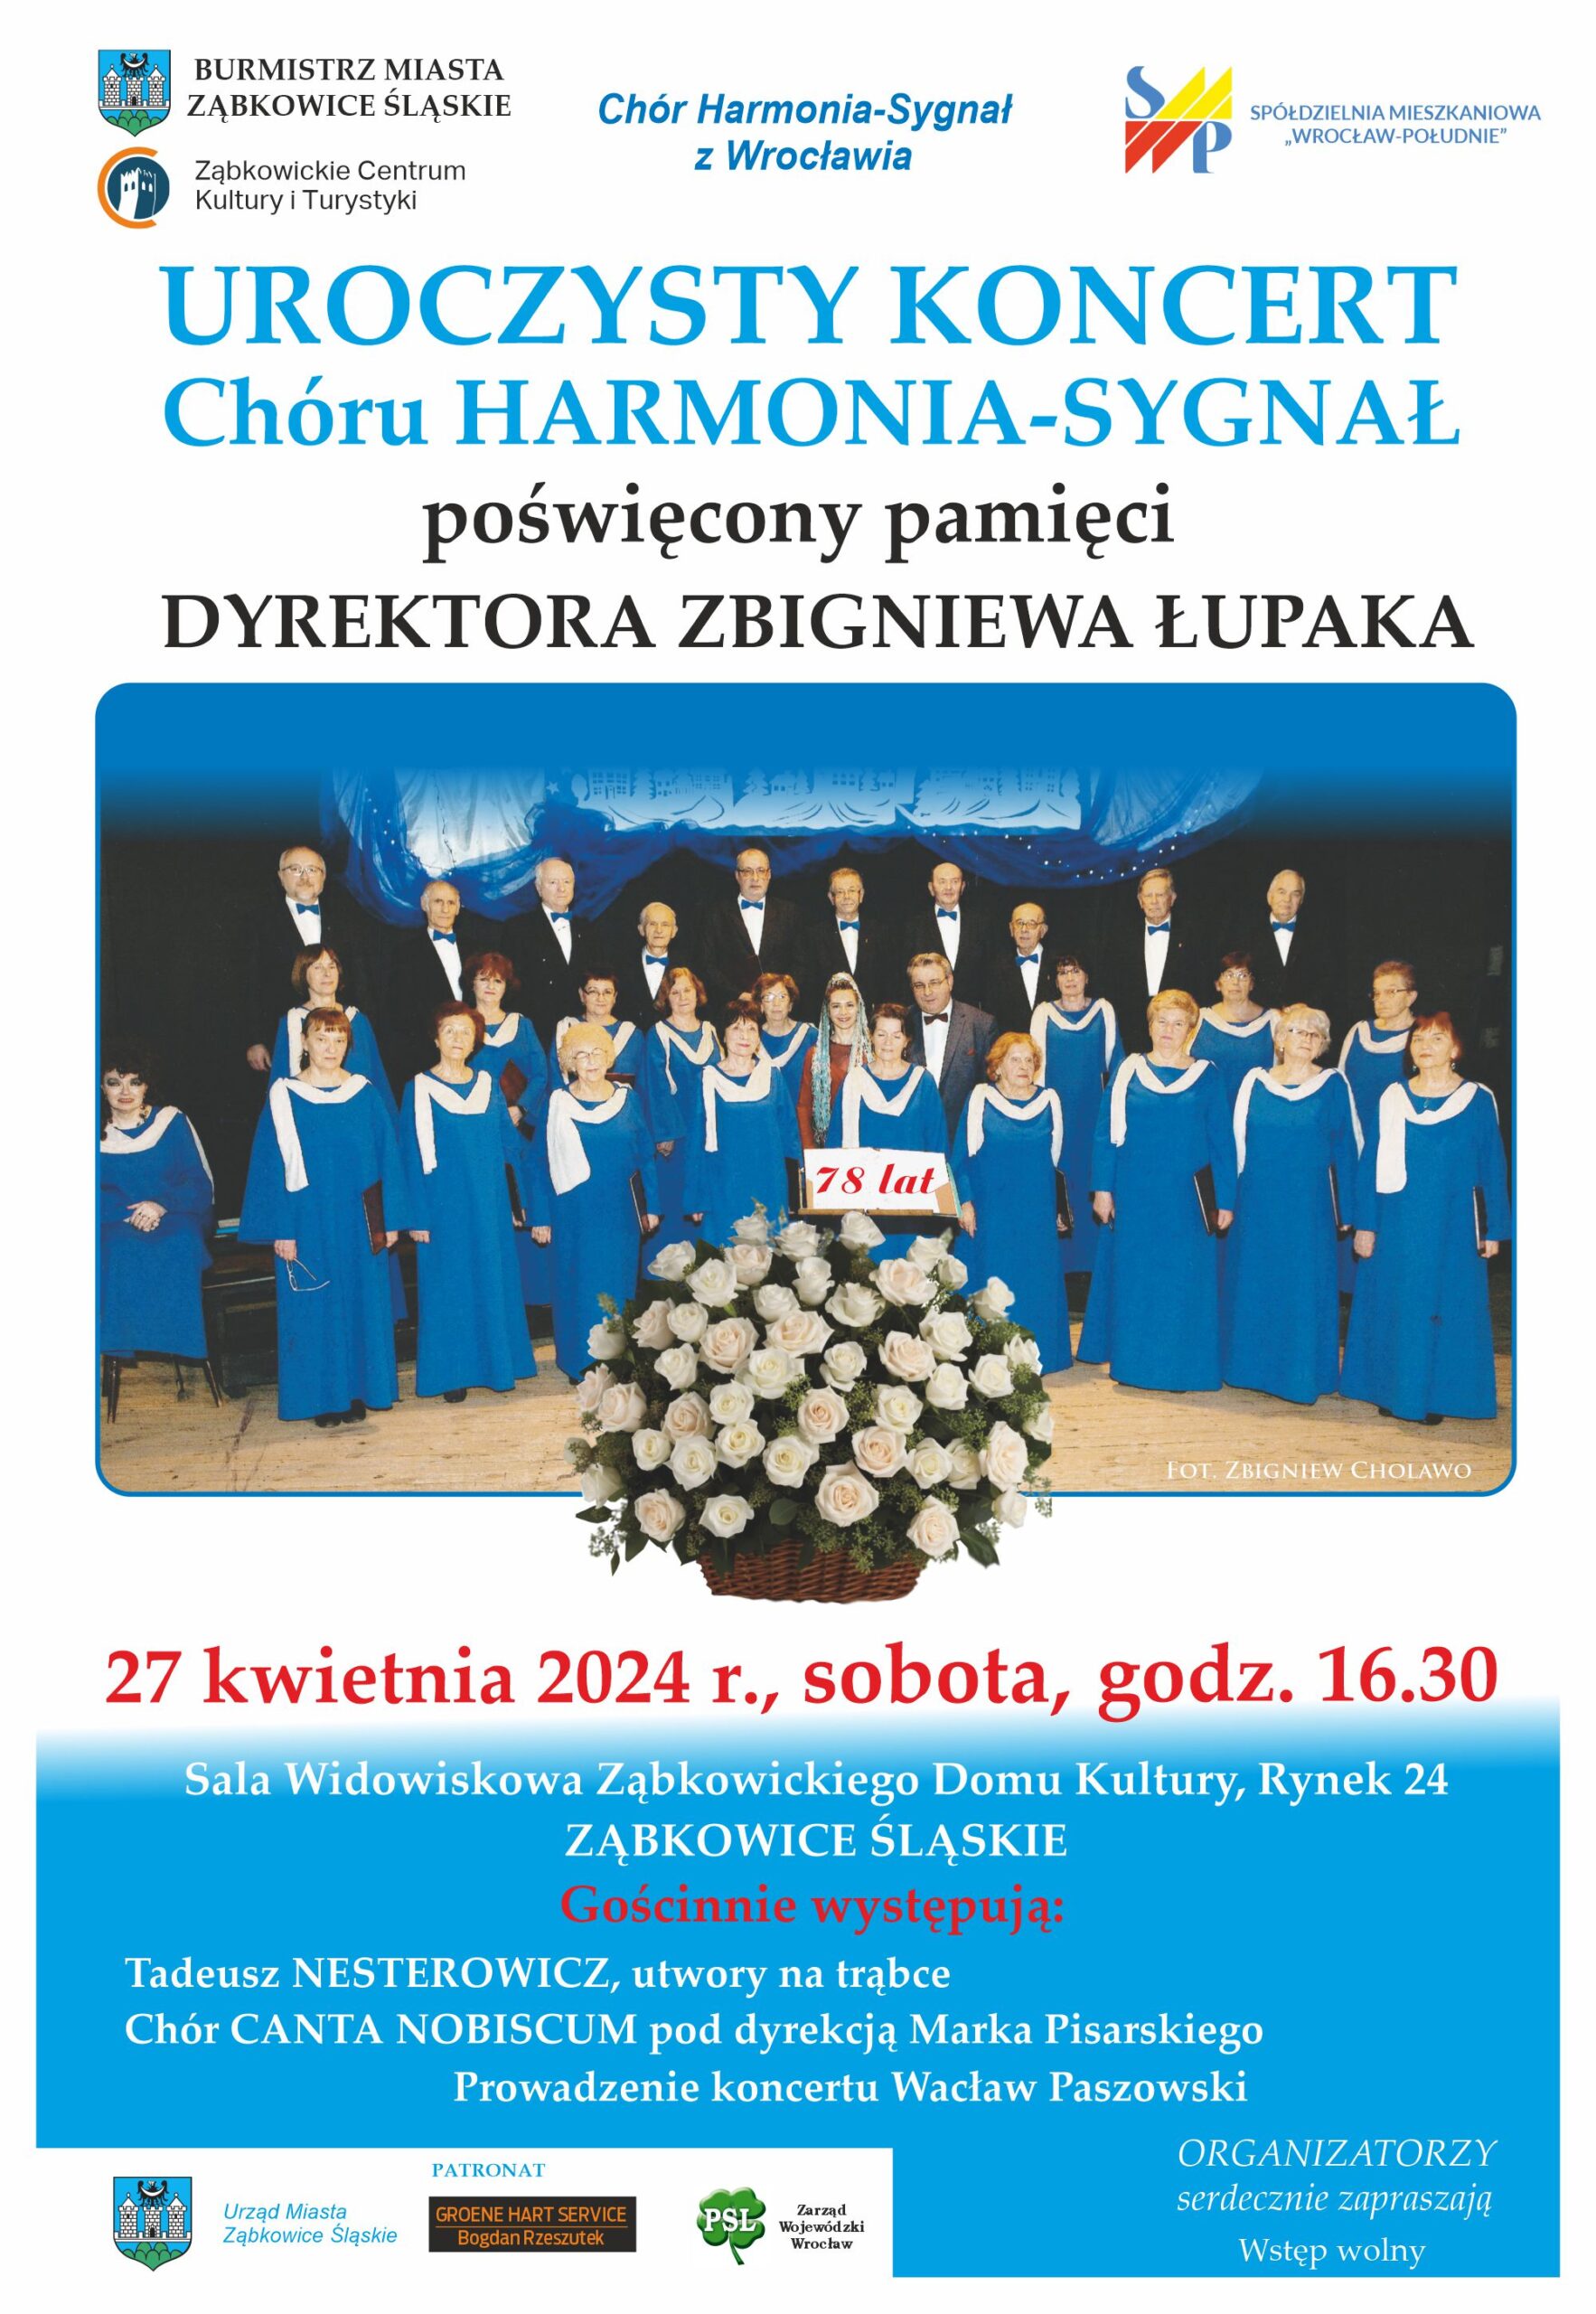 Plakat informujący o Uroczystym Koncercie Chóru Harmonia-Sygnał poświęconym pamięci Dyrektora Zbigniewa Łupaka, który odbył się 27 kwietnia 2024